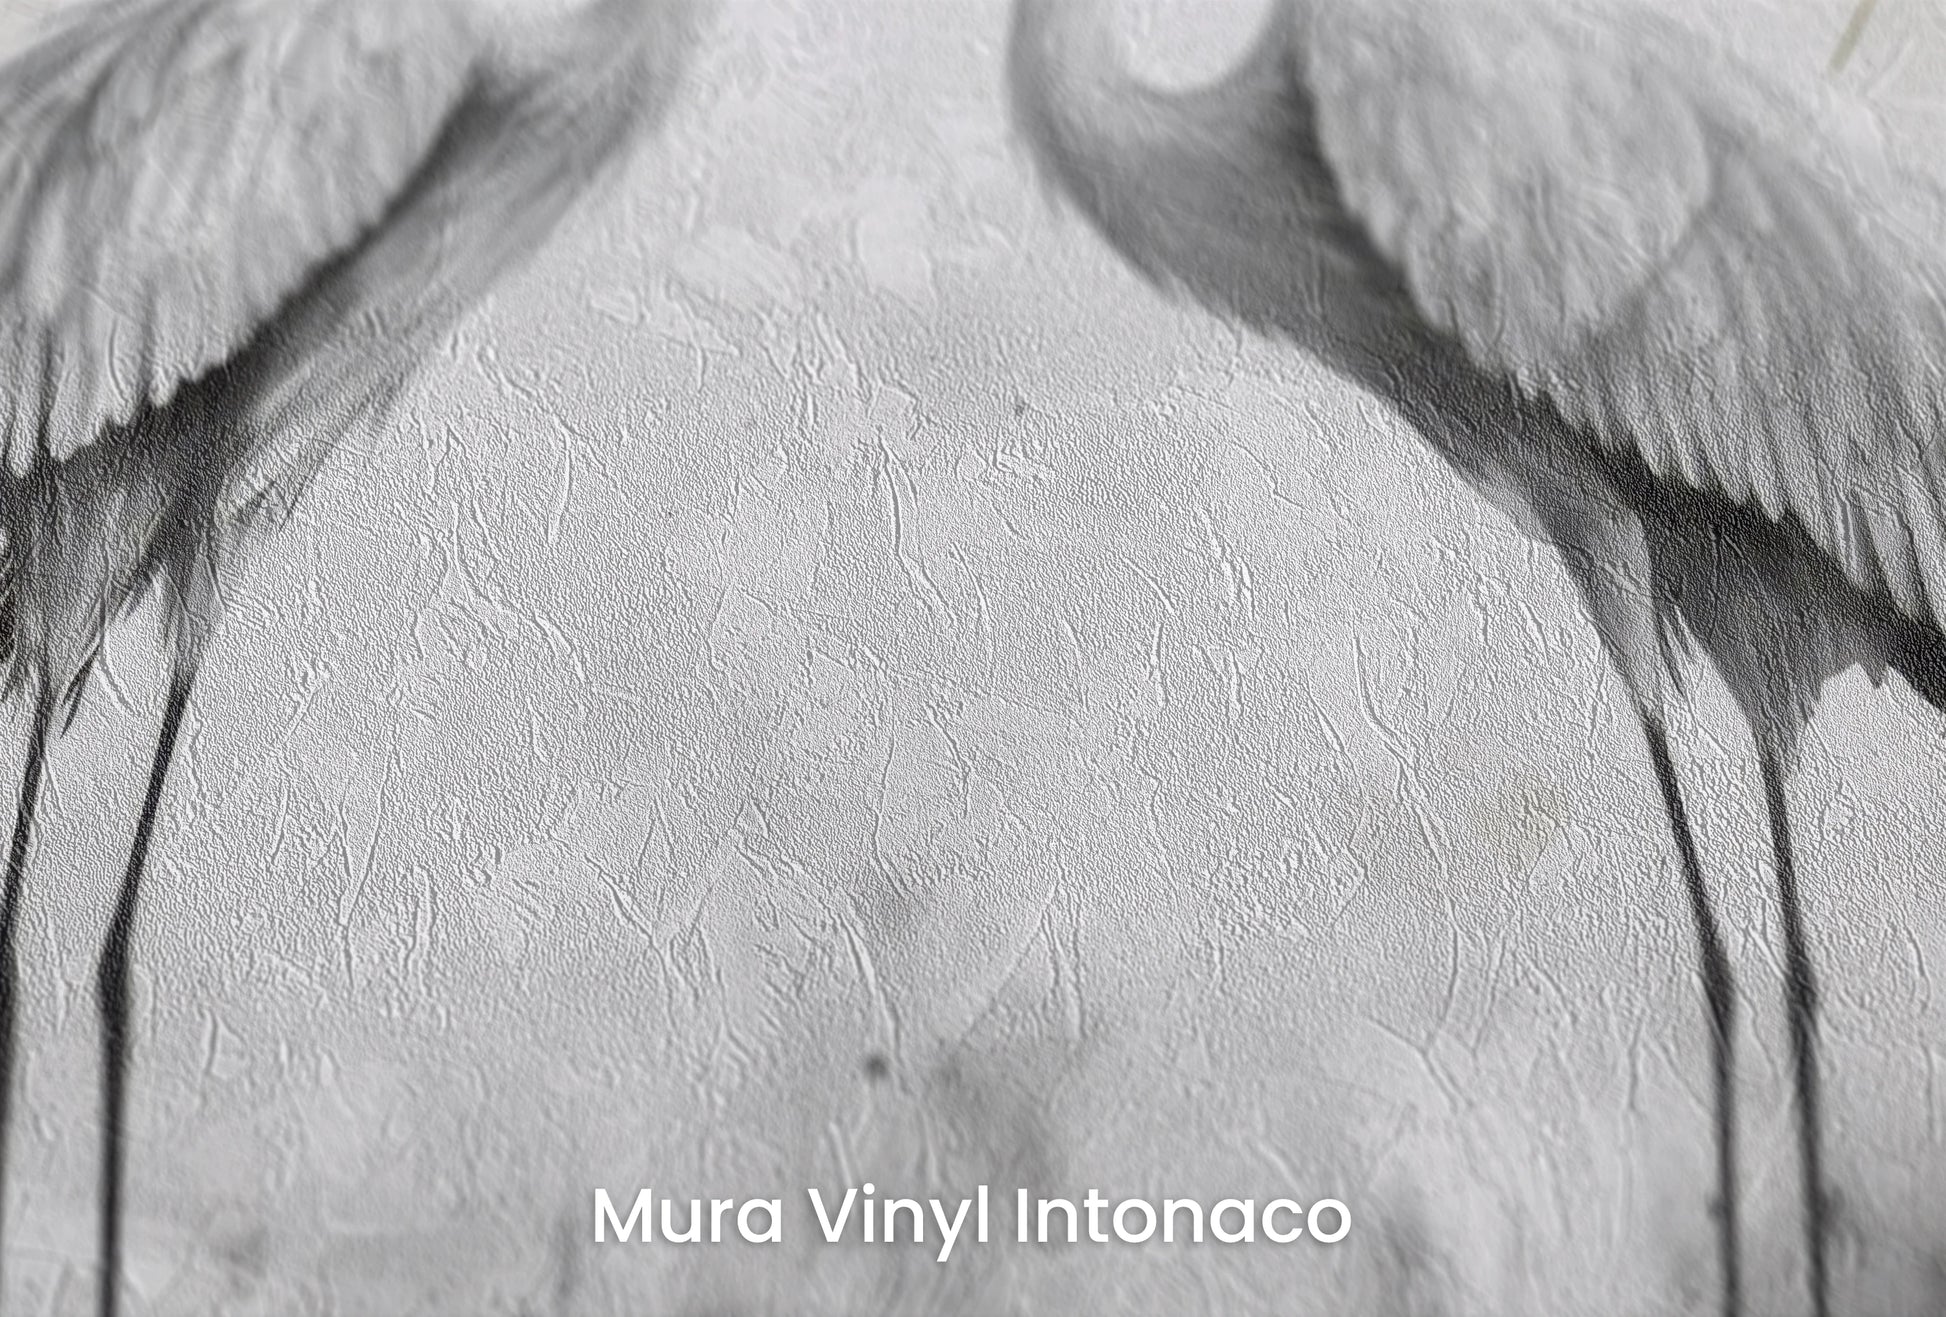 Zbliżenie na artystyczną fototapetę o nazwie Starry Harmony na podłożu Mura Vinyl Intonaco - struktura tartego tynku.